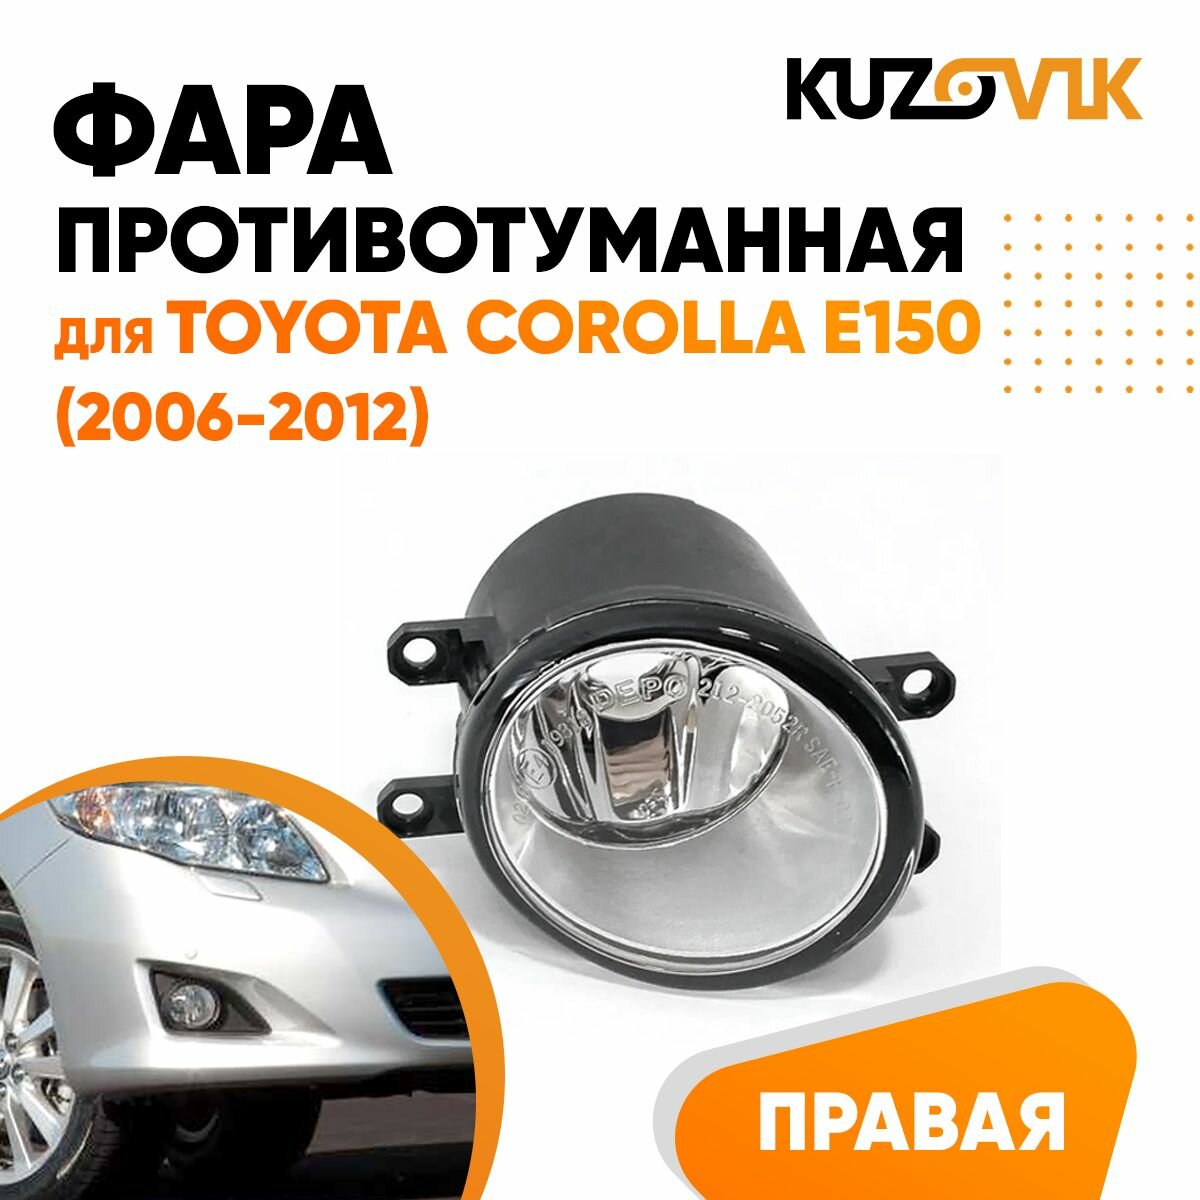 Противотуманная фара для Тойота Королла Е150 Toyota Corolla E150 (2006-2012) правая, птф, туманка